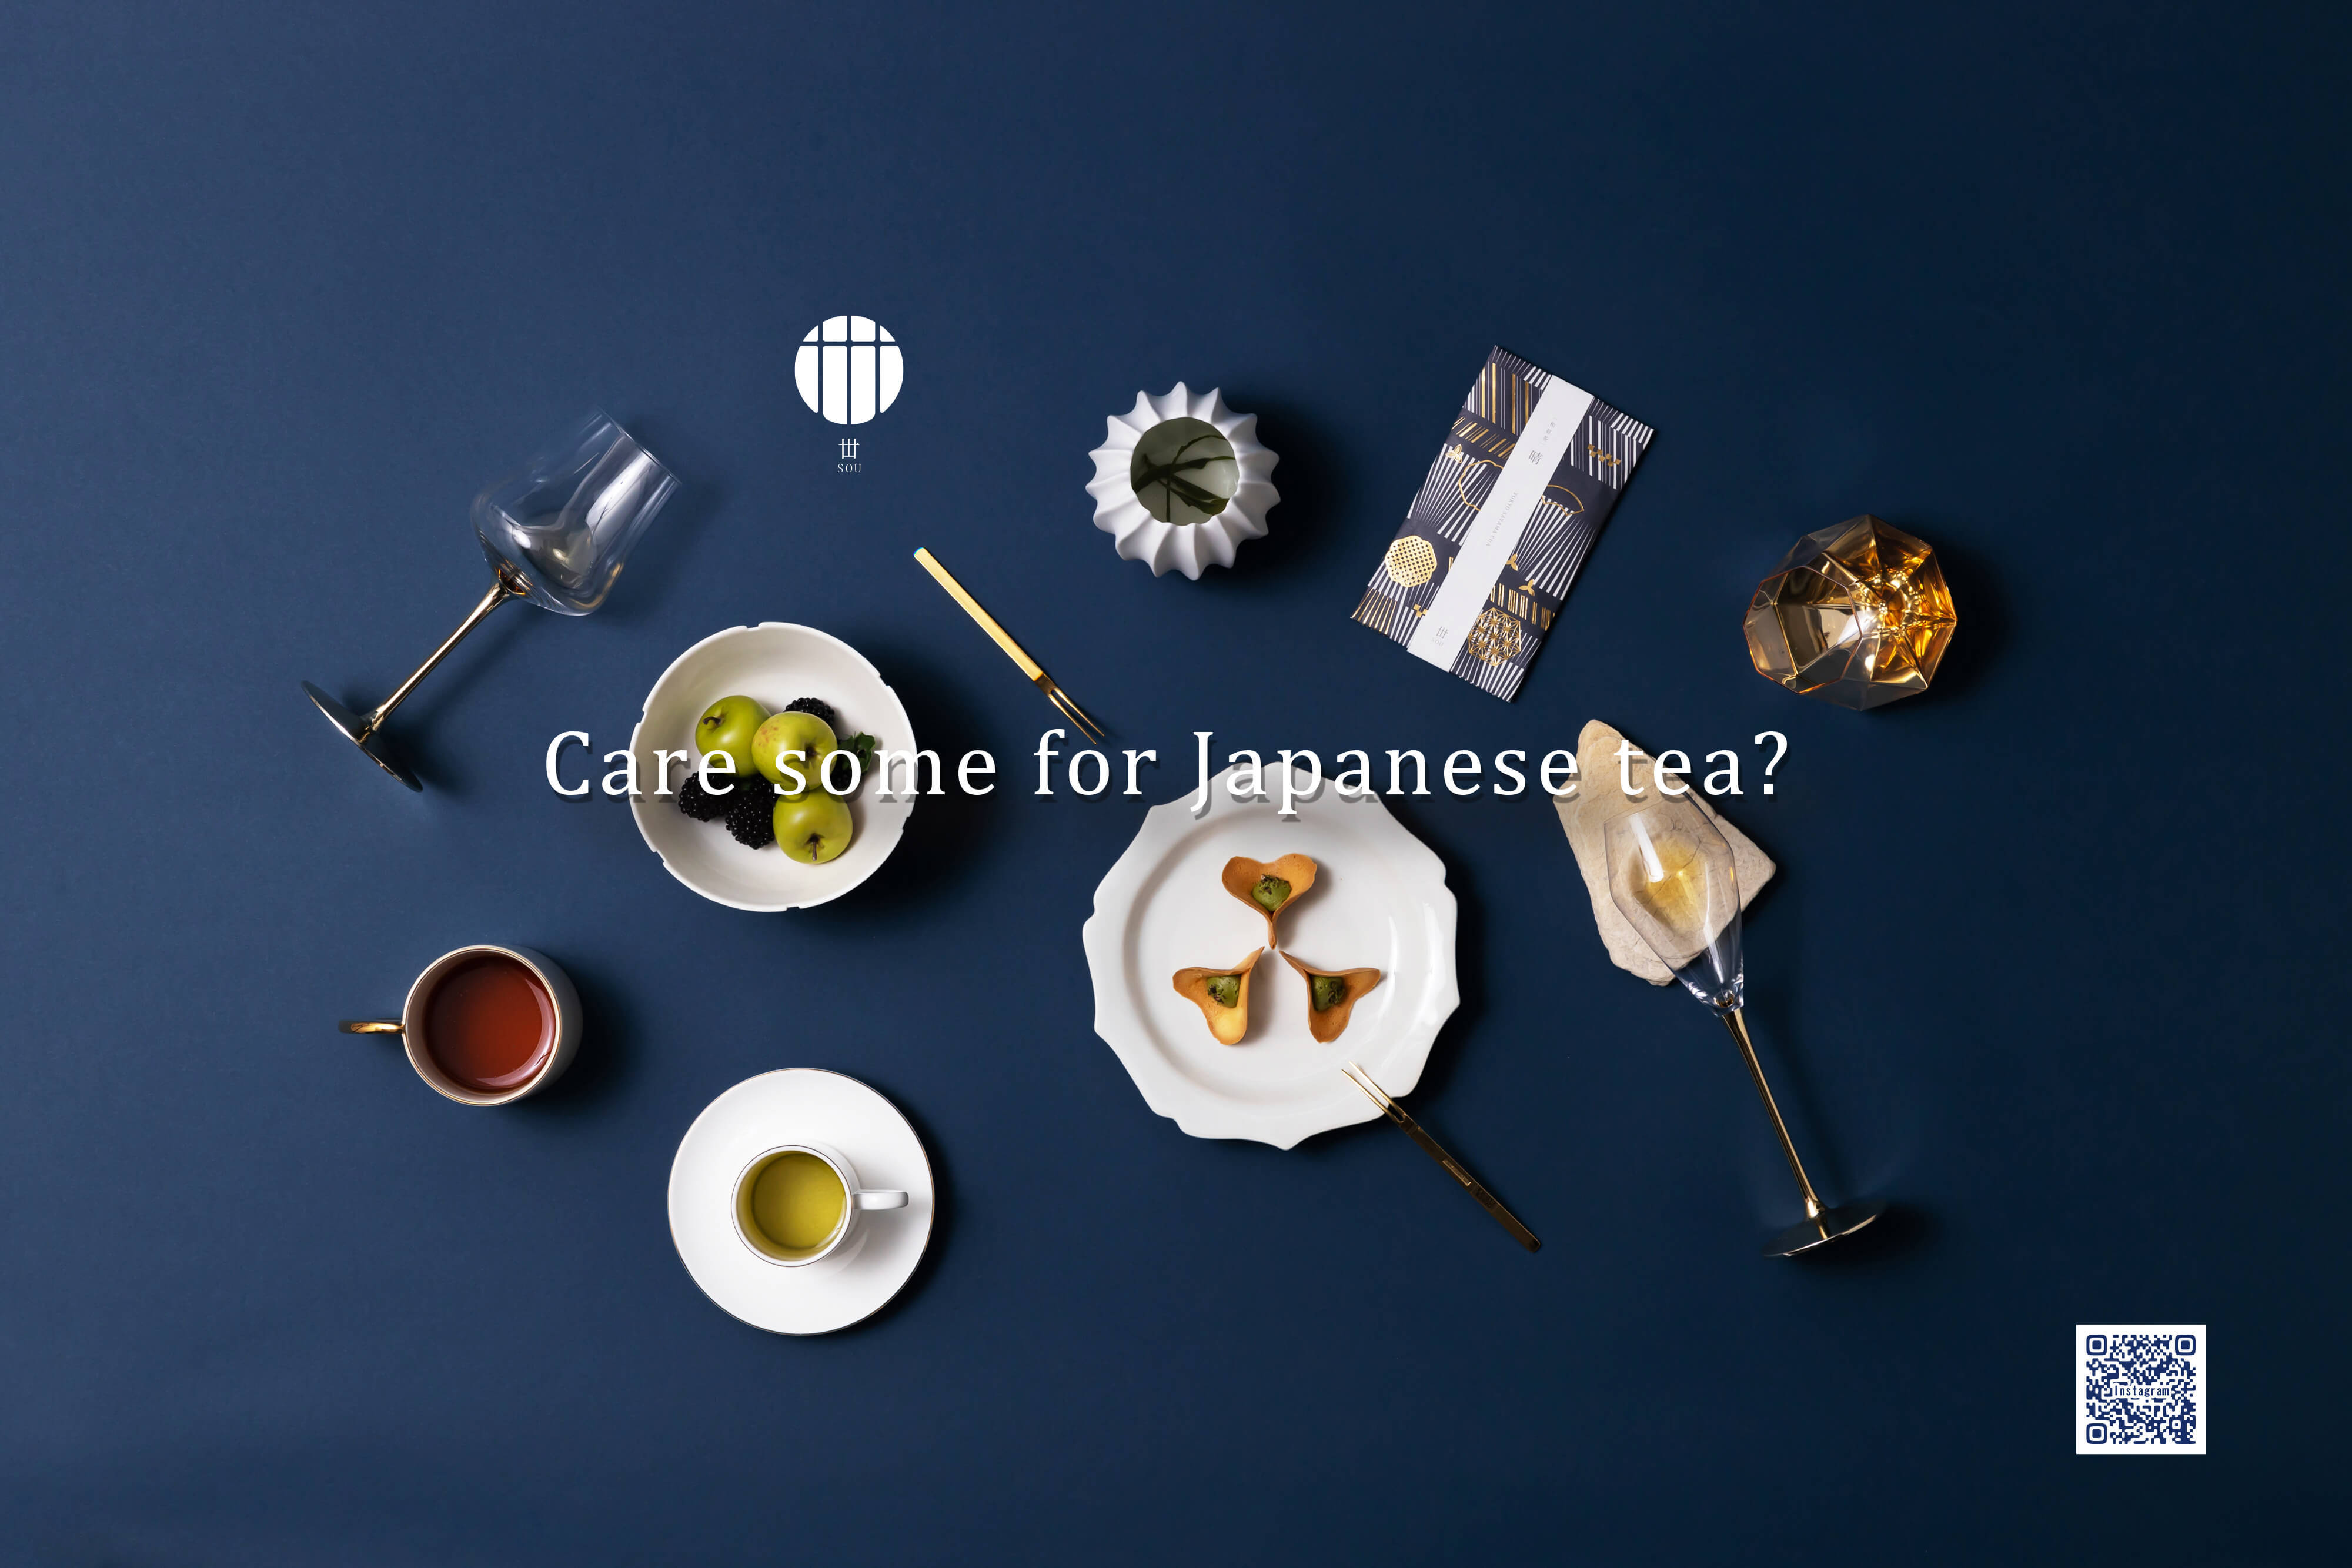 イタリア・ミラノから「新たな東京の景色」をお届け　
「東京茶 丗 -SOU-」× ICHIKAWA 味覚コラボレーション企画
「一世市代」にてオリジナル料理を提供